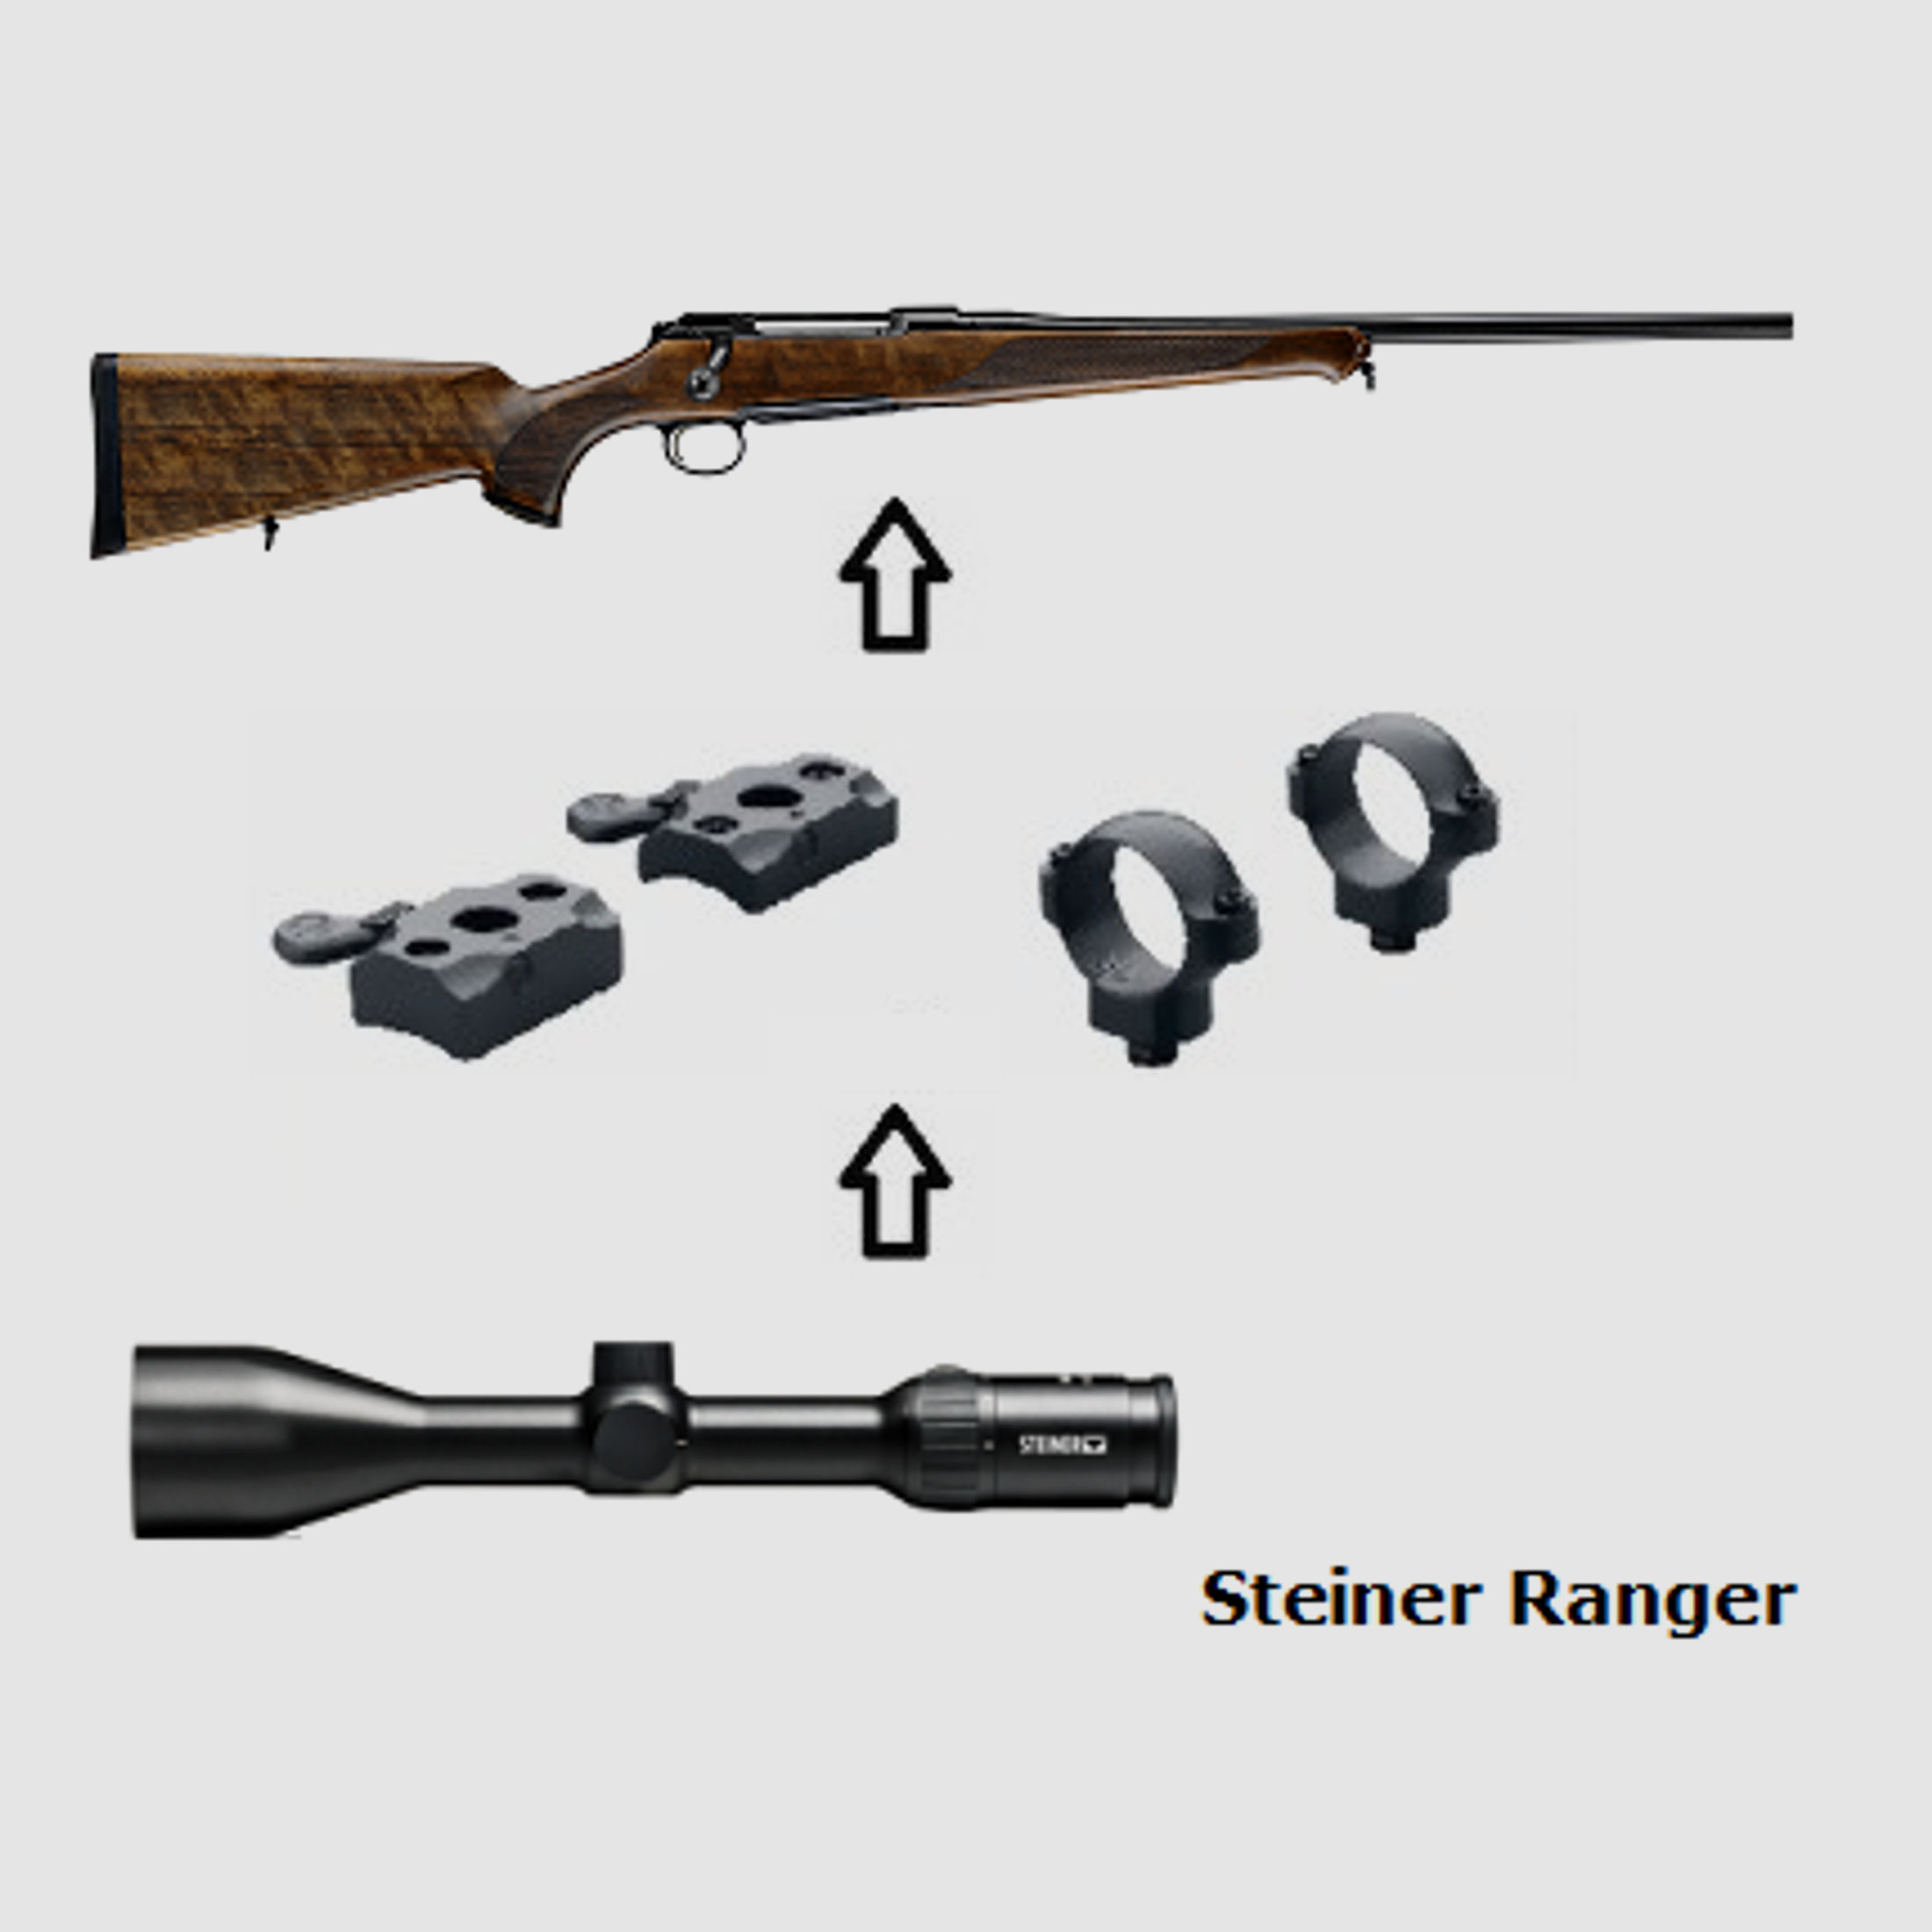 Sauer 101 Classic + Steiner Ranger + Montage + ... Komplettpaket